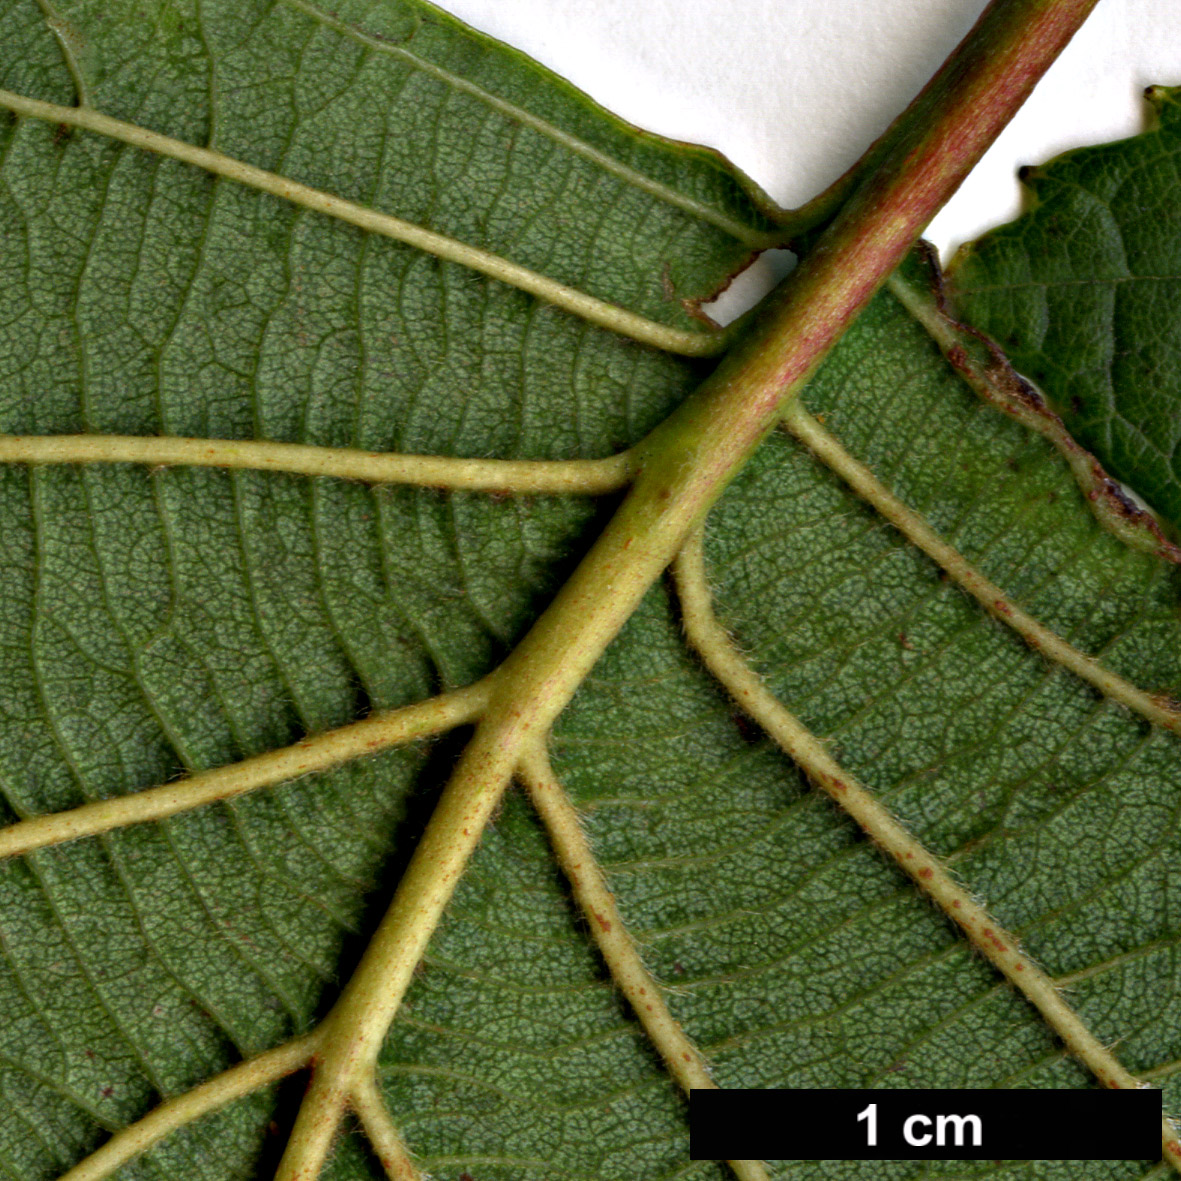 High resolution image: Family: Betulaceae - Genus: Alnus - Taxon: hirsuta - SpeciesSub: subsp. sibirica